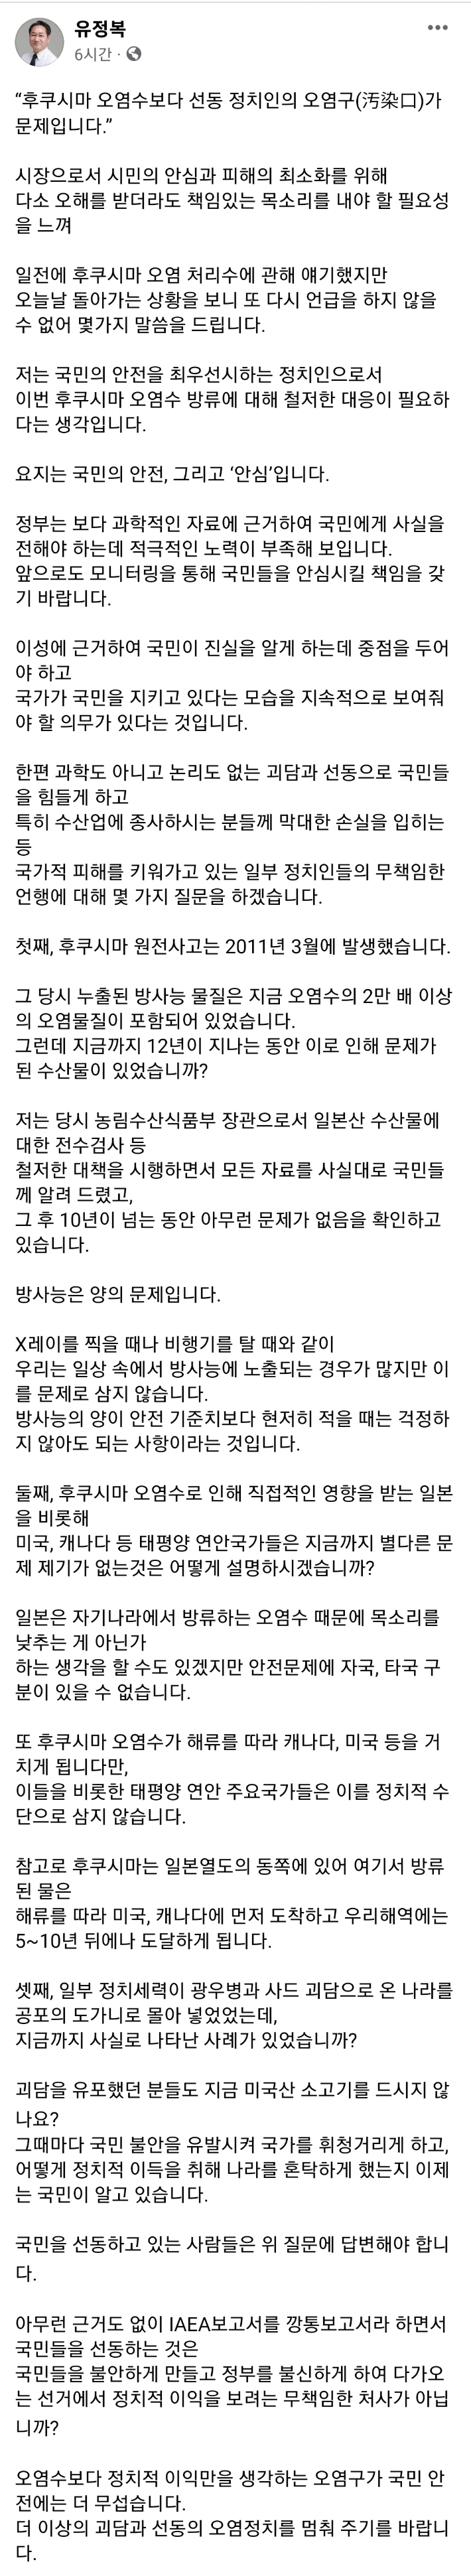 유정복 인천시장이 9일 자신의 SNS에 올린 글 화면 캡처.